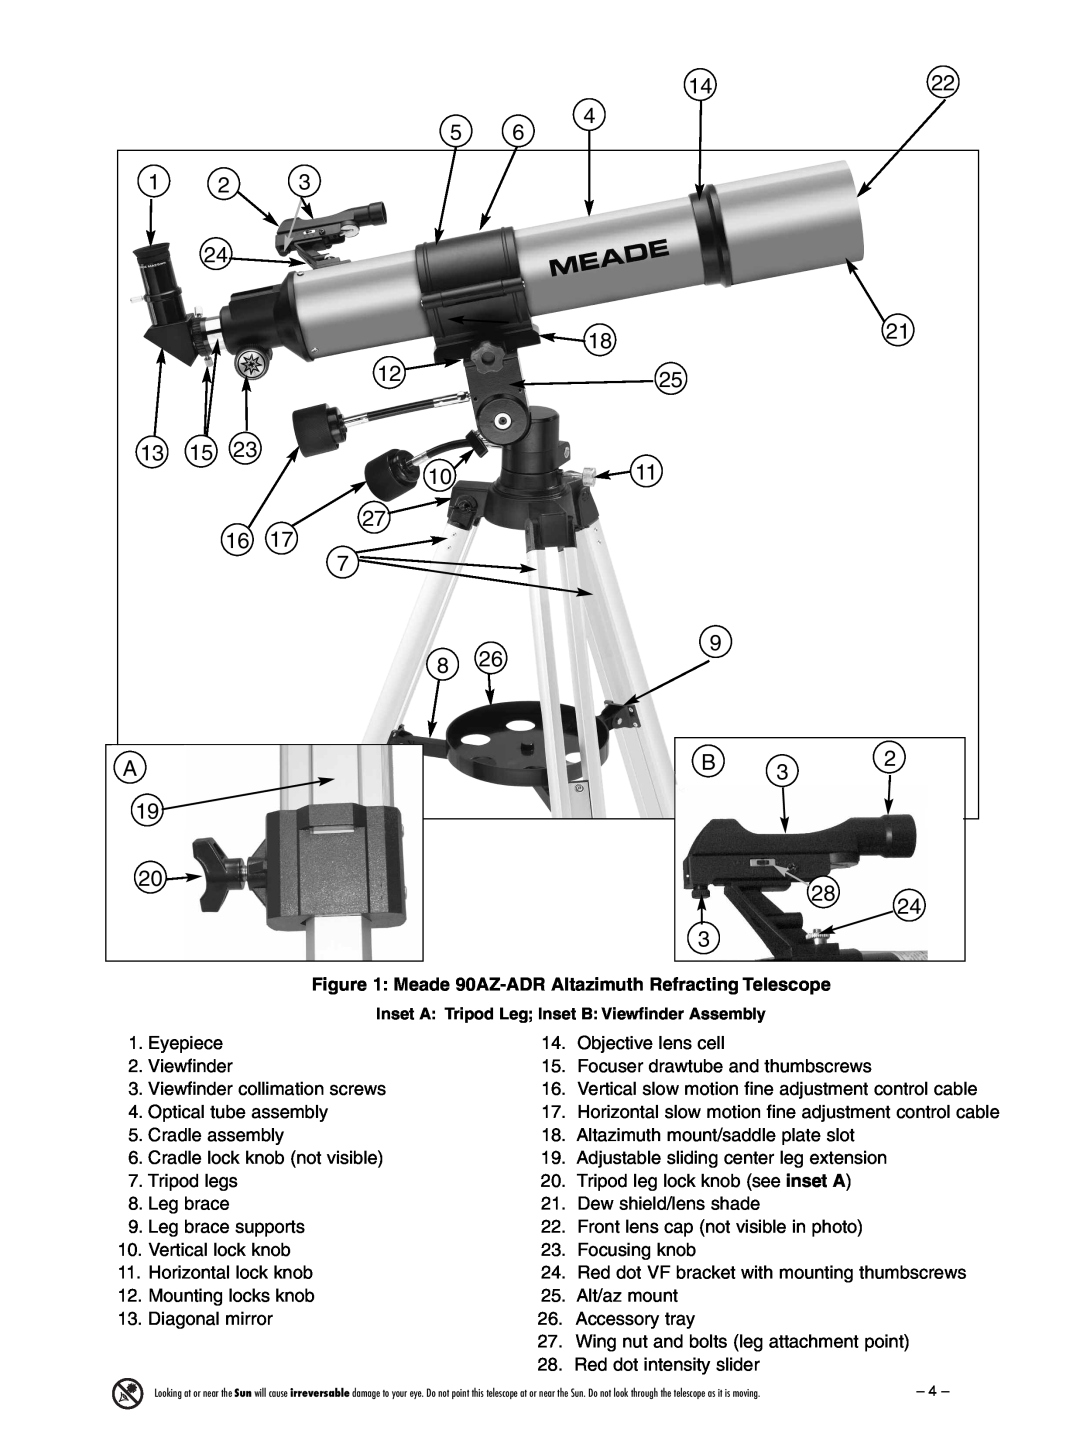 Meade 90AZ-ADRB instruction manual Meade 90AZ-ADR Altazimuth Refracting Telescope 